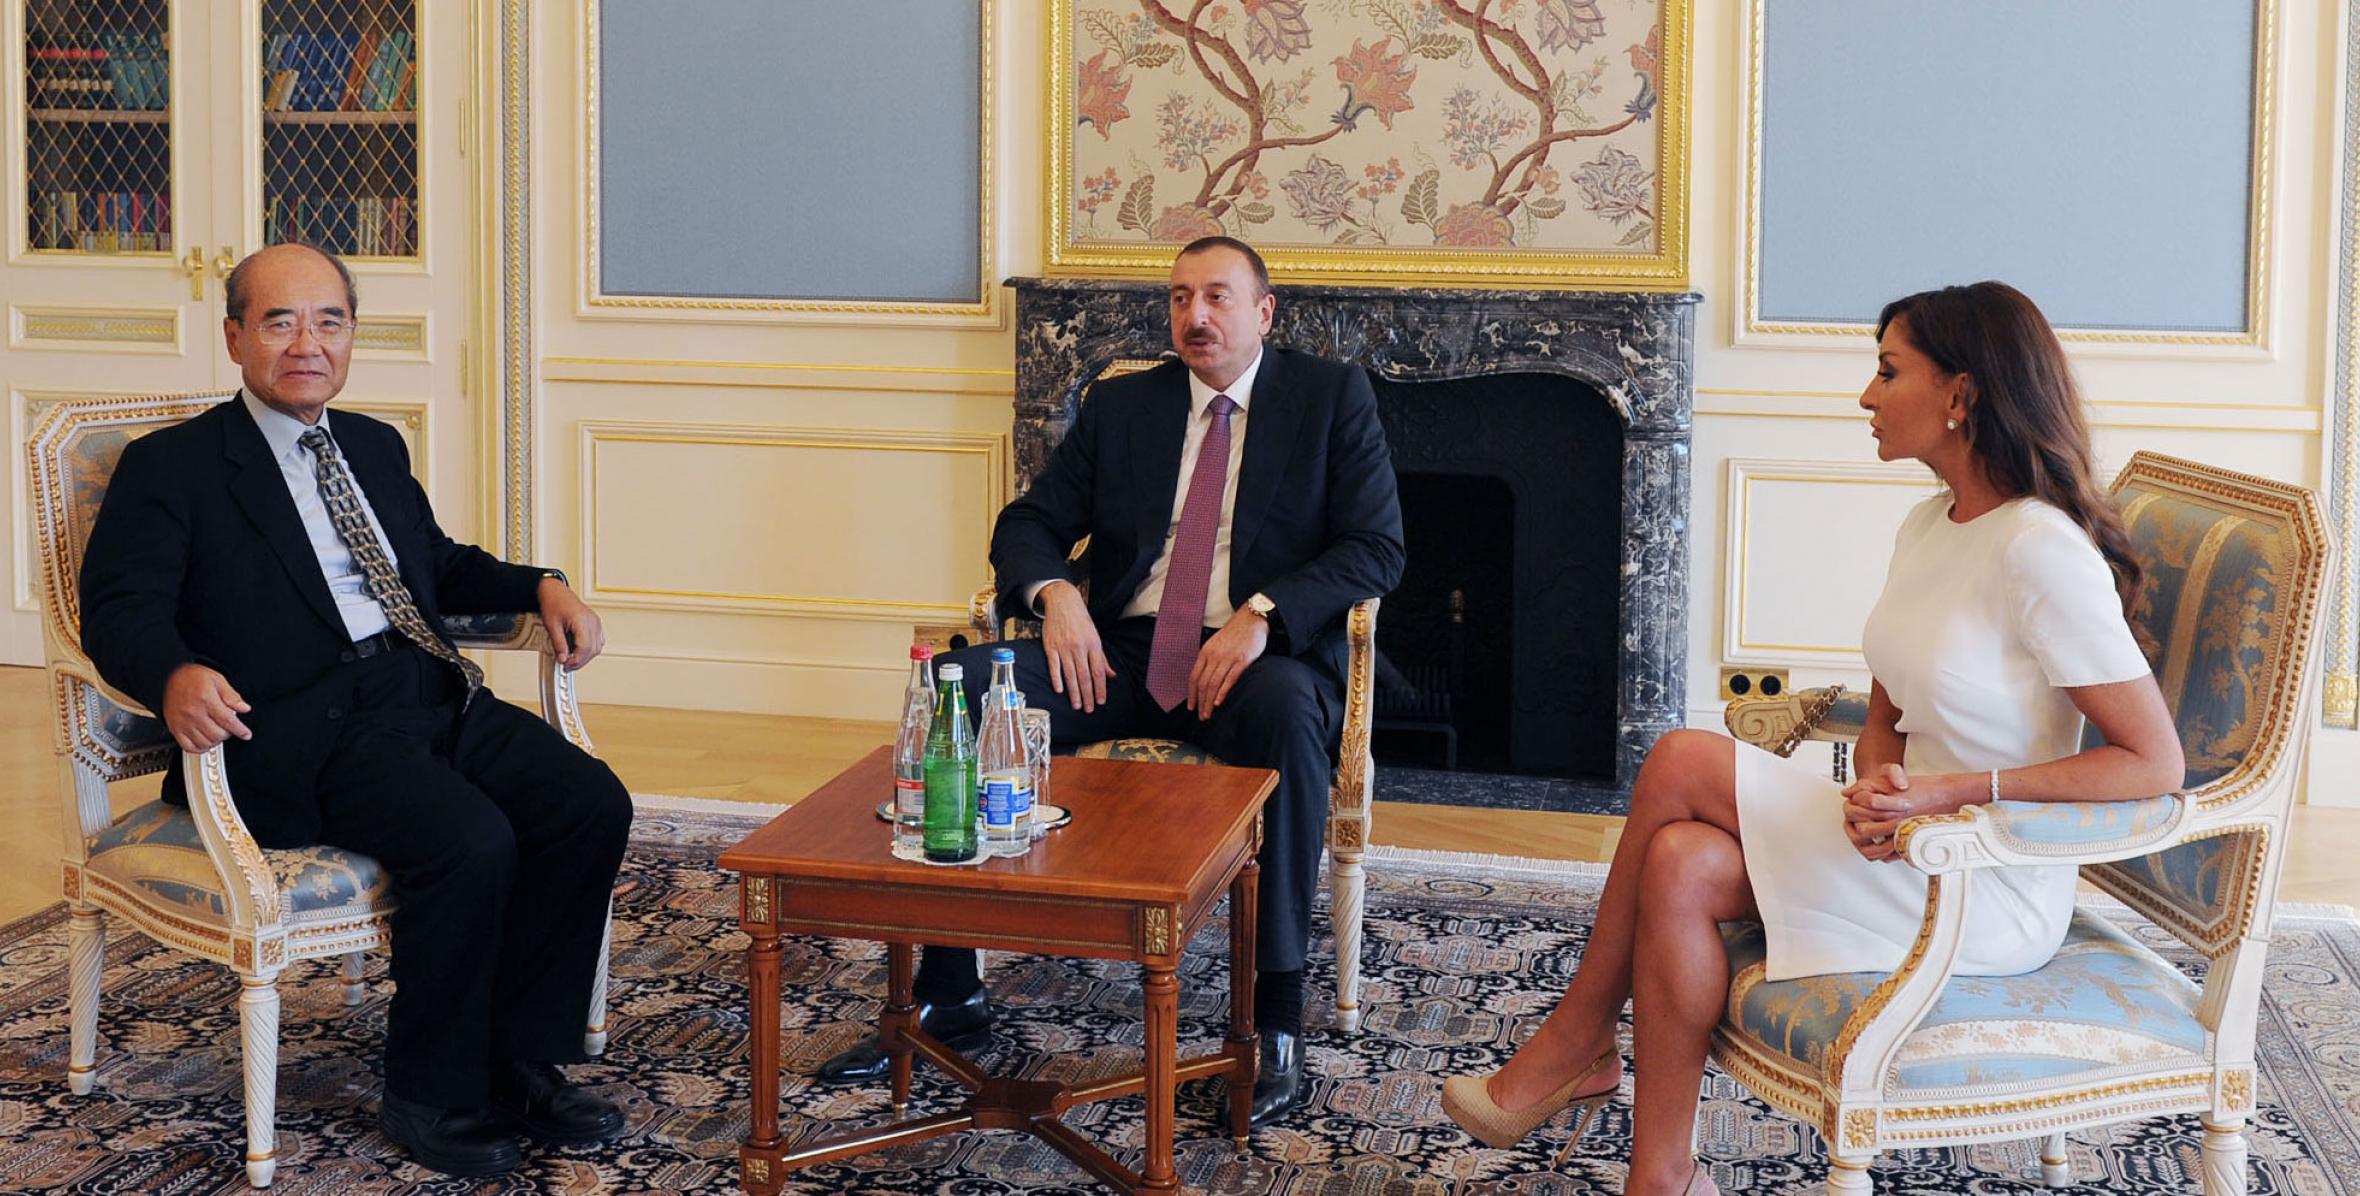 Ilham Aliyev and Mrs. Mehriban Aliyeva, met with the former UNESCO Director General, Koichiro Matsuura